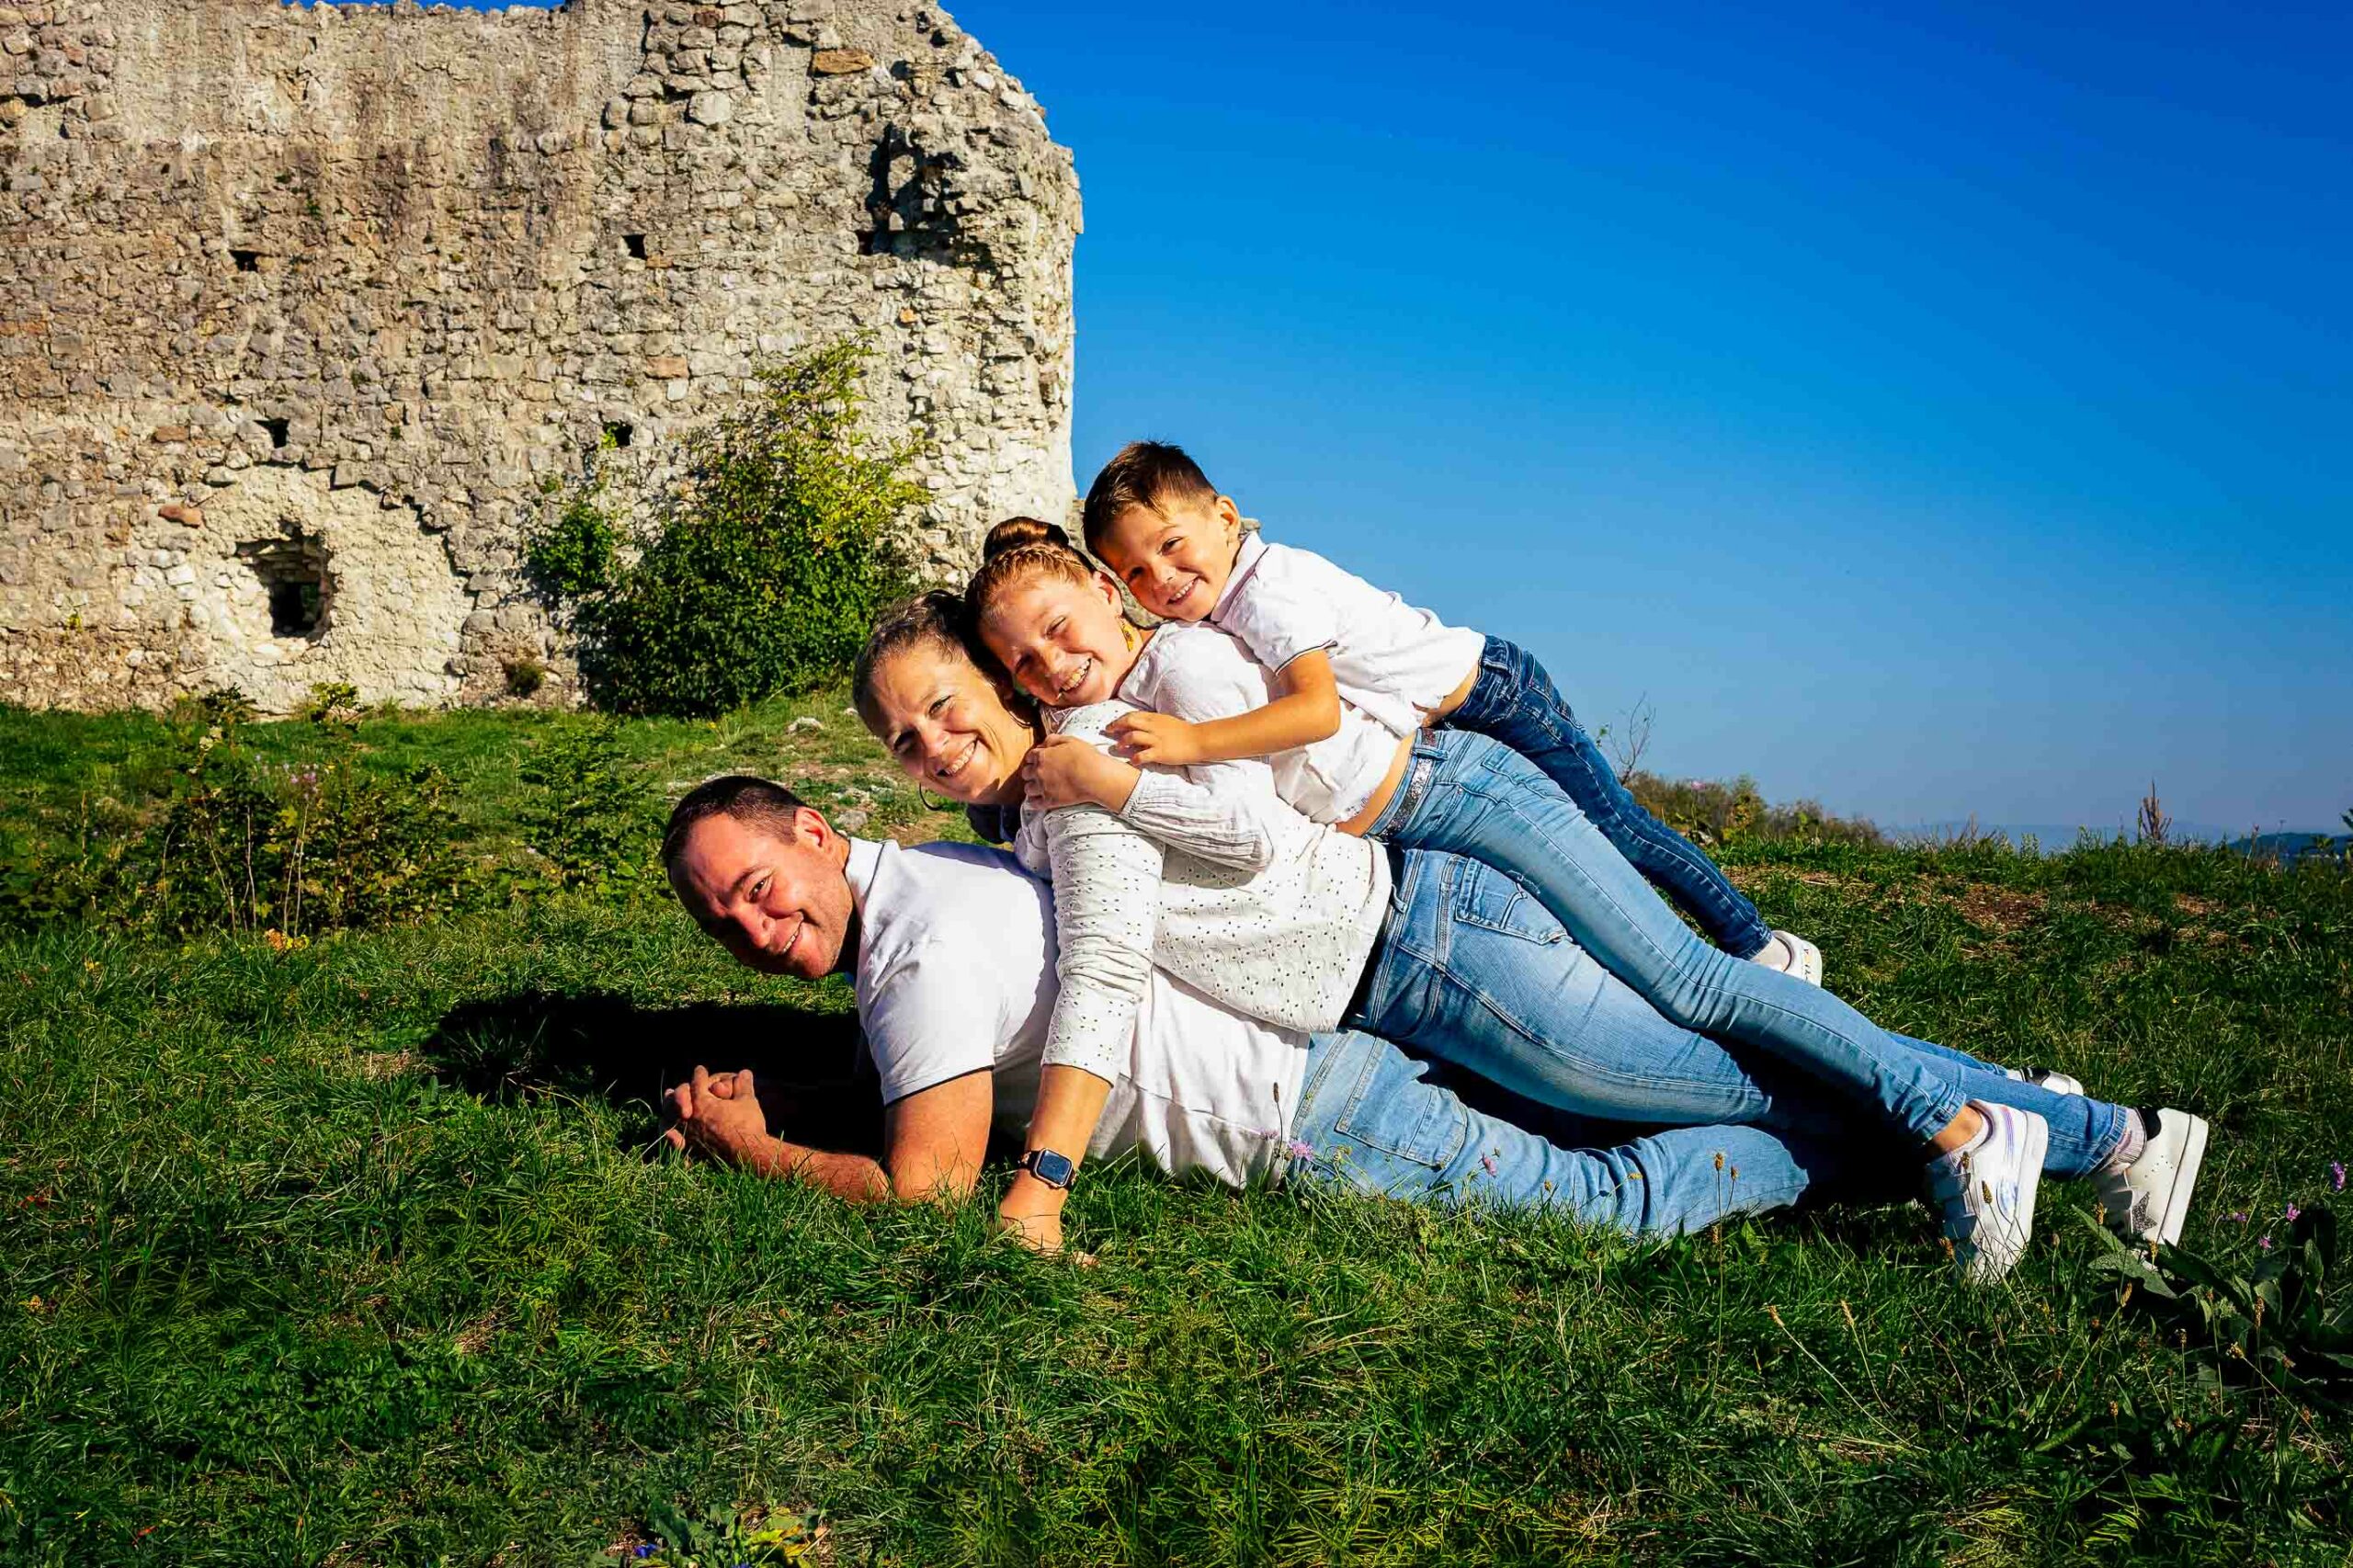 Photographe de portrait - famille - Haute-Savoie - Genève - Minzier - photographe de famille - Chaumont haute savoie